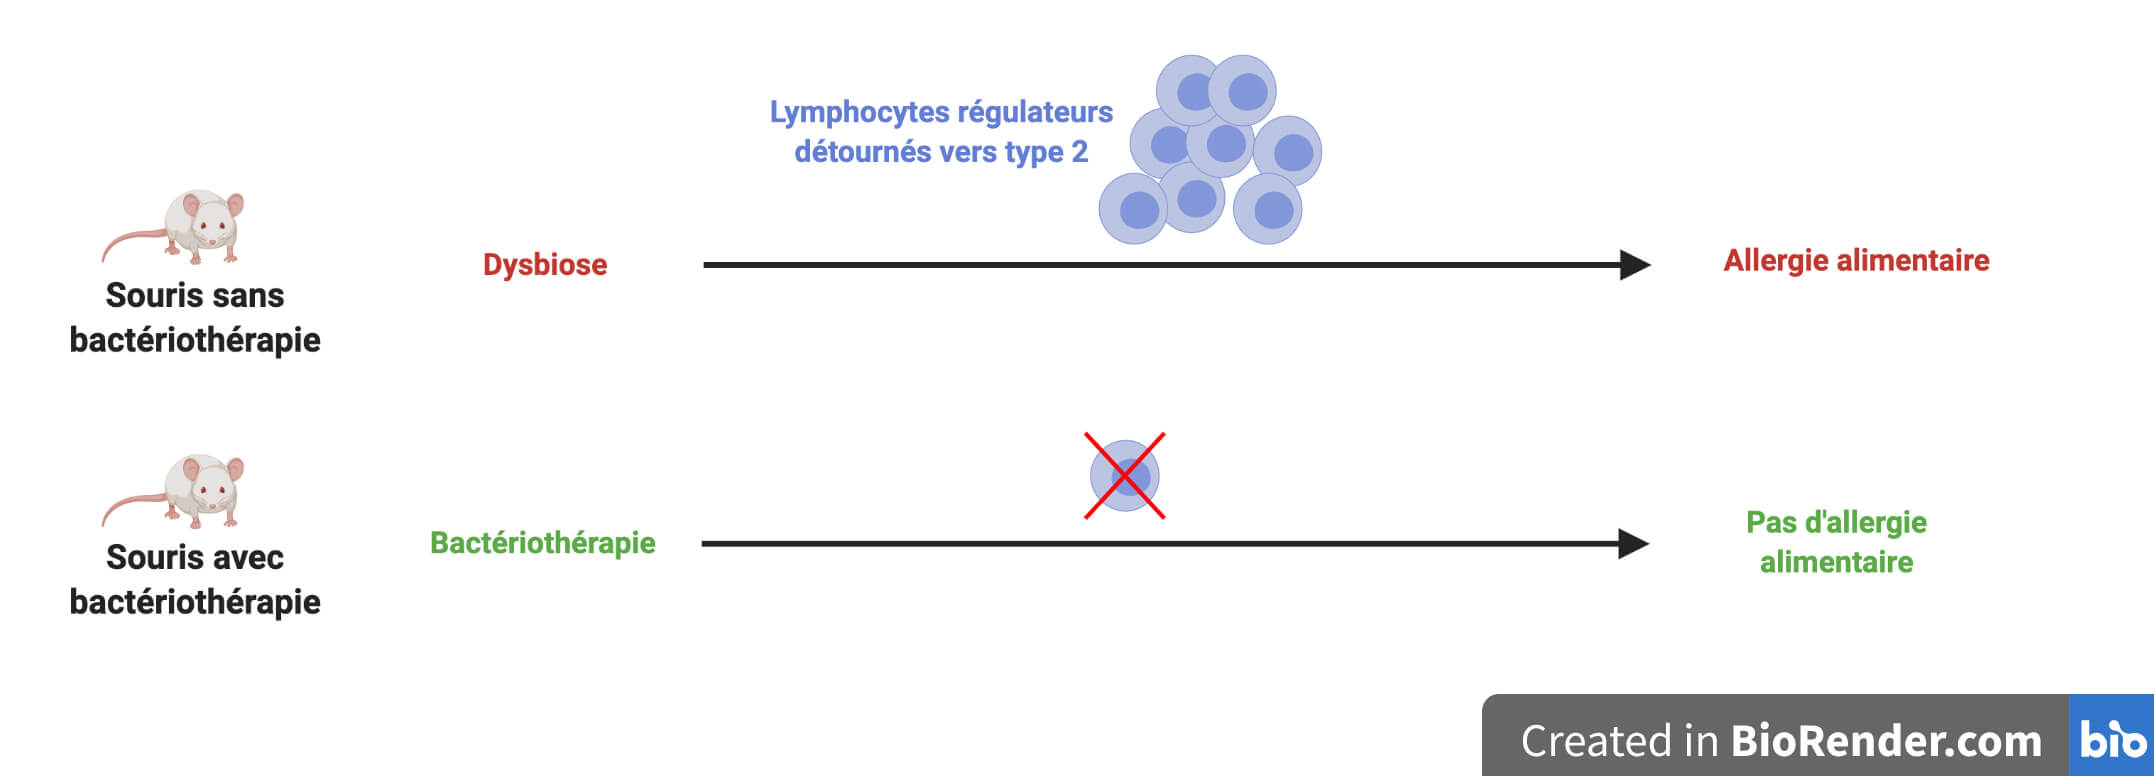 En haut, souris sans bactériothérapie. 
Une flèche relie "Dysbiose" à "Allergie alimentaire". La flèche est surmontée de lymphocytes régulateurs de type 2. En bas, souris avec bactériothérapie. Une flèche relie "Bactériothérapie" à "Pas d'allergie alimentaire". La flèche est surmontée d'un lymphocyte régulateur de type 2 barré d'une croix rouge.


